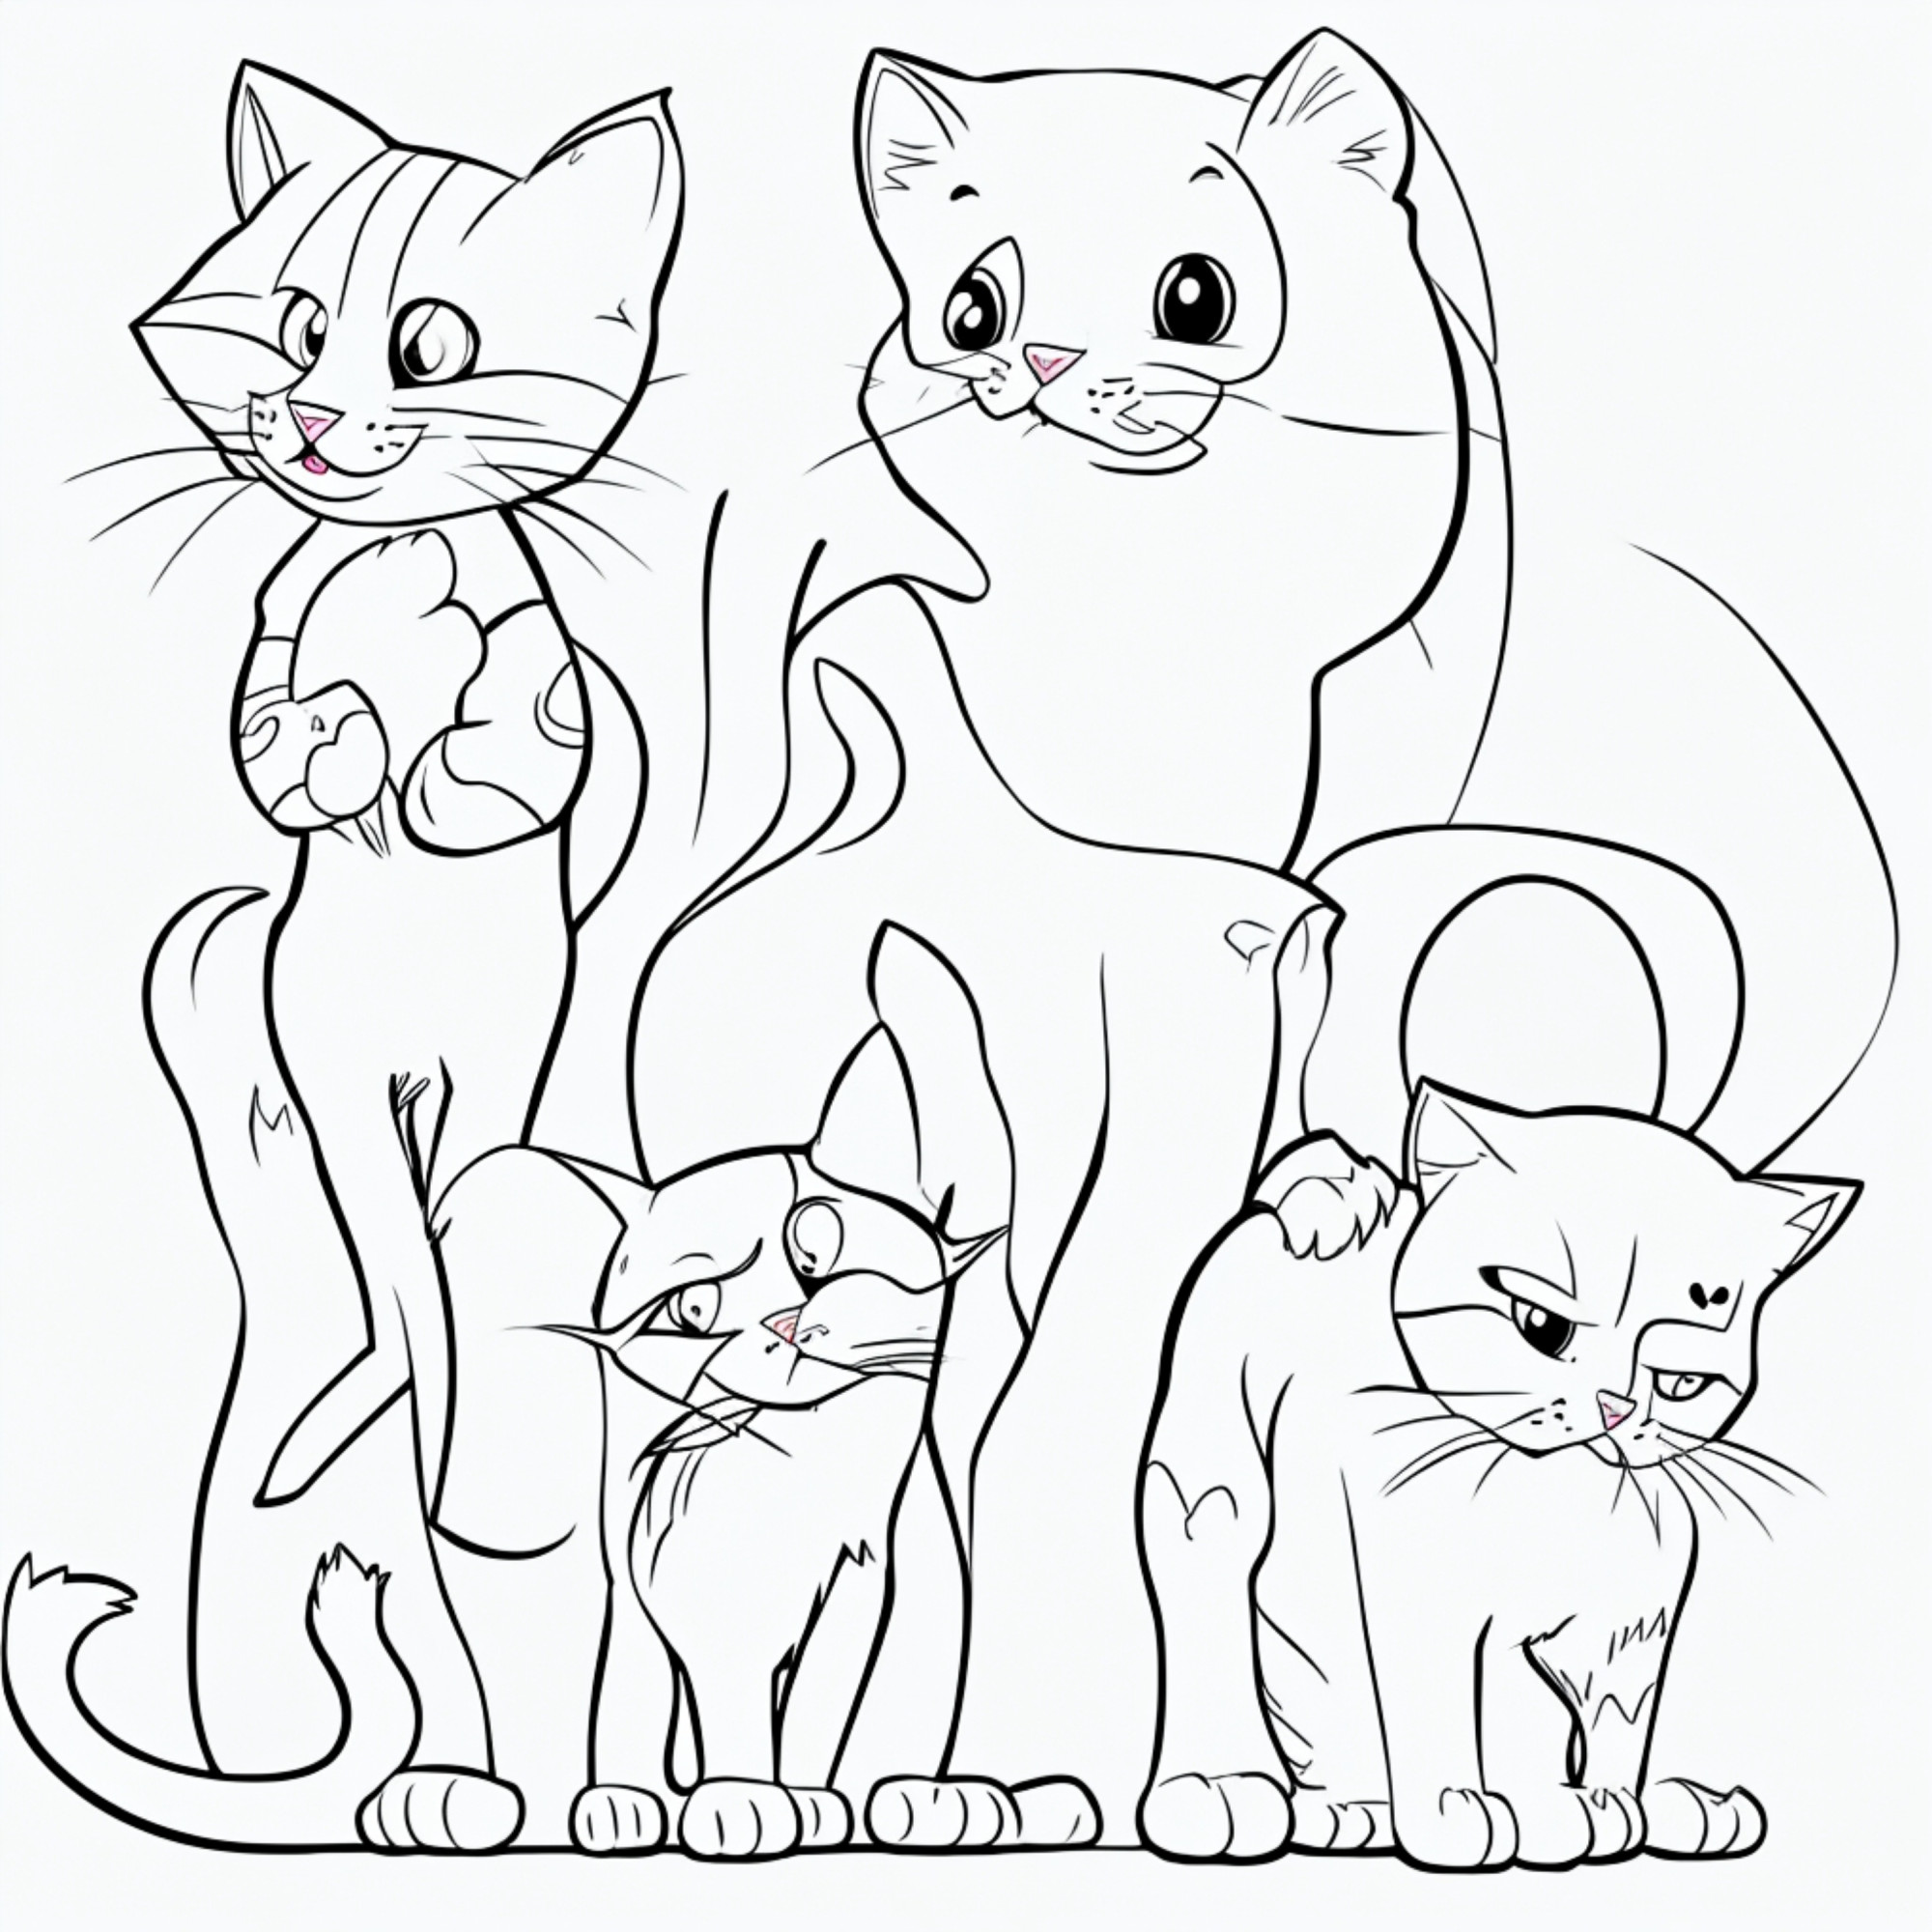 Раскраска для детей: необычные коты и кошки